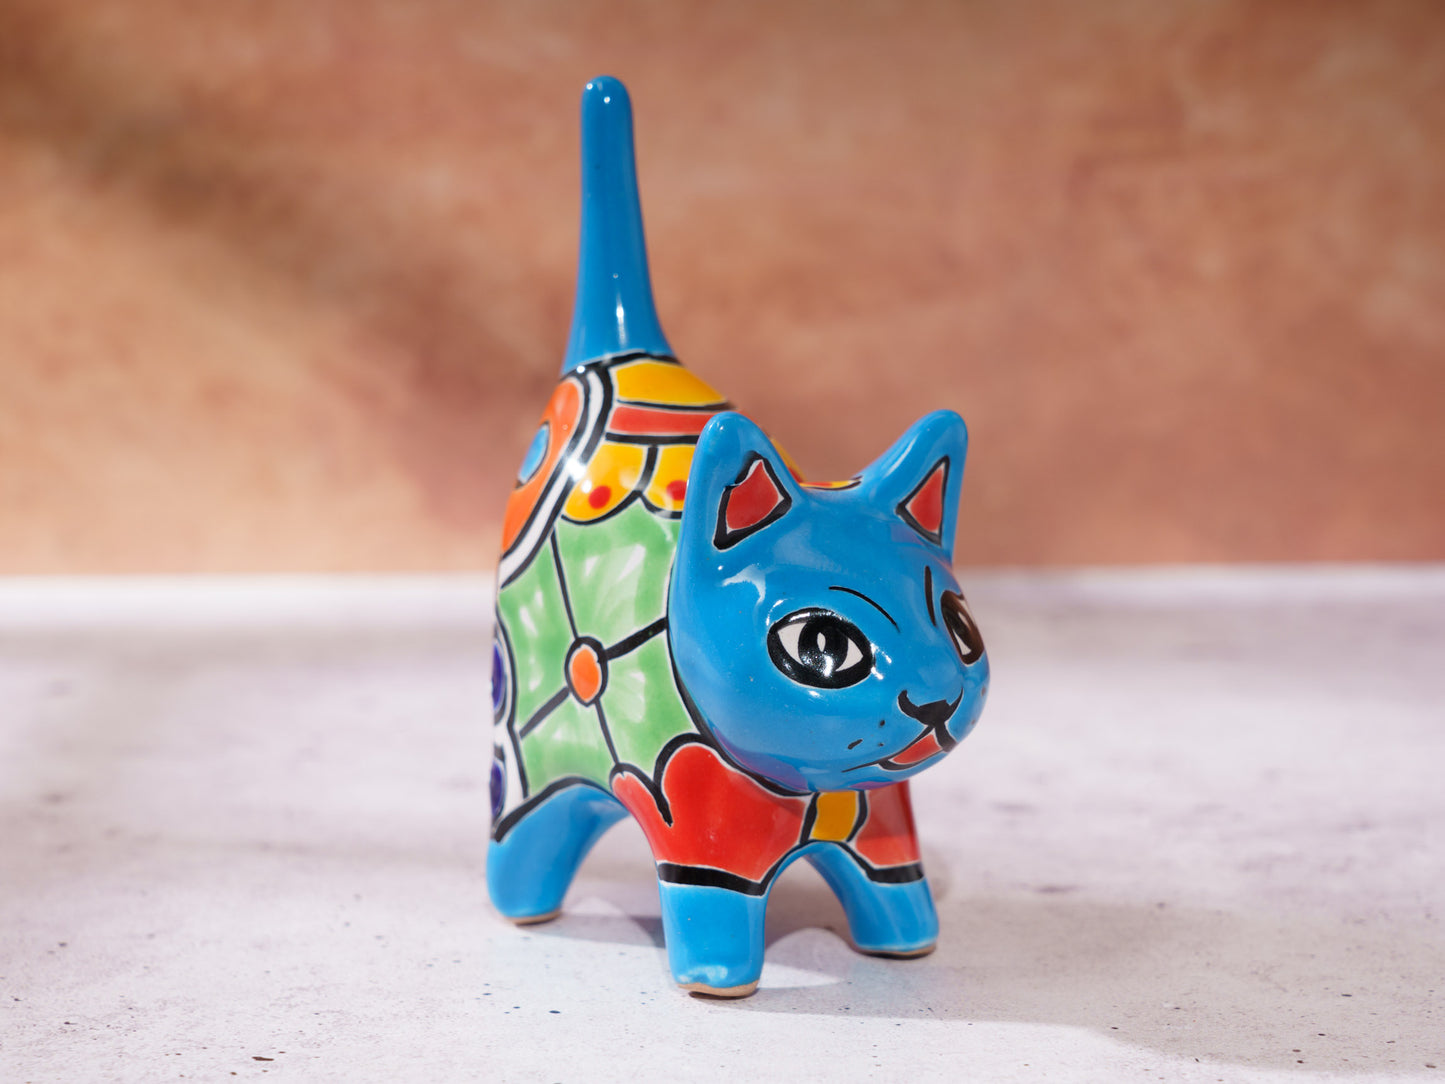 Cat Mini Figurine Ring Holder - Turquoise